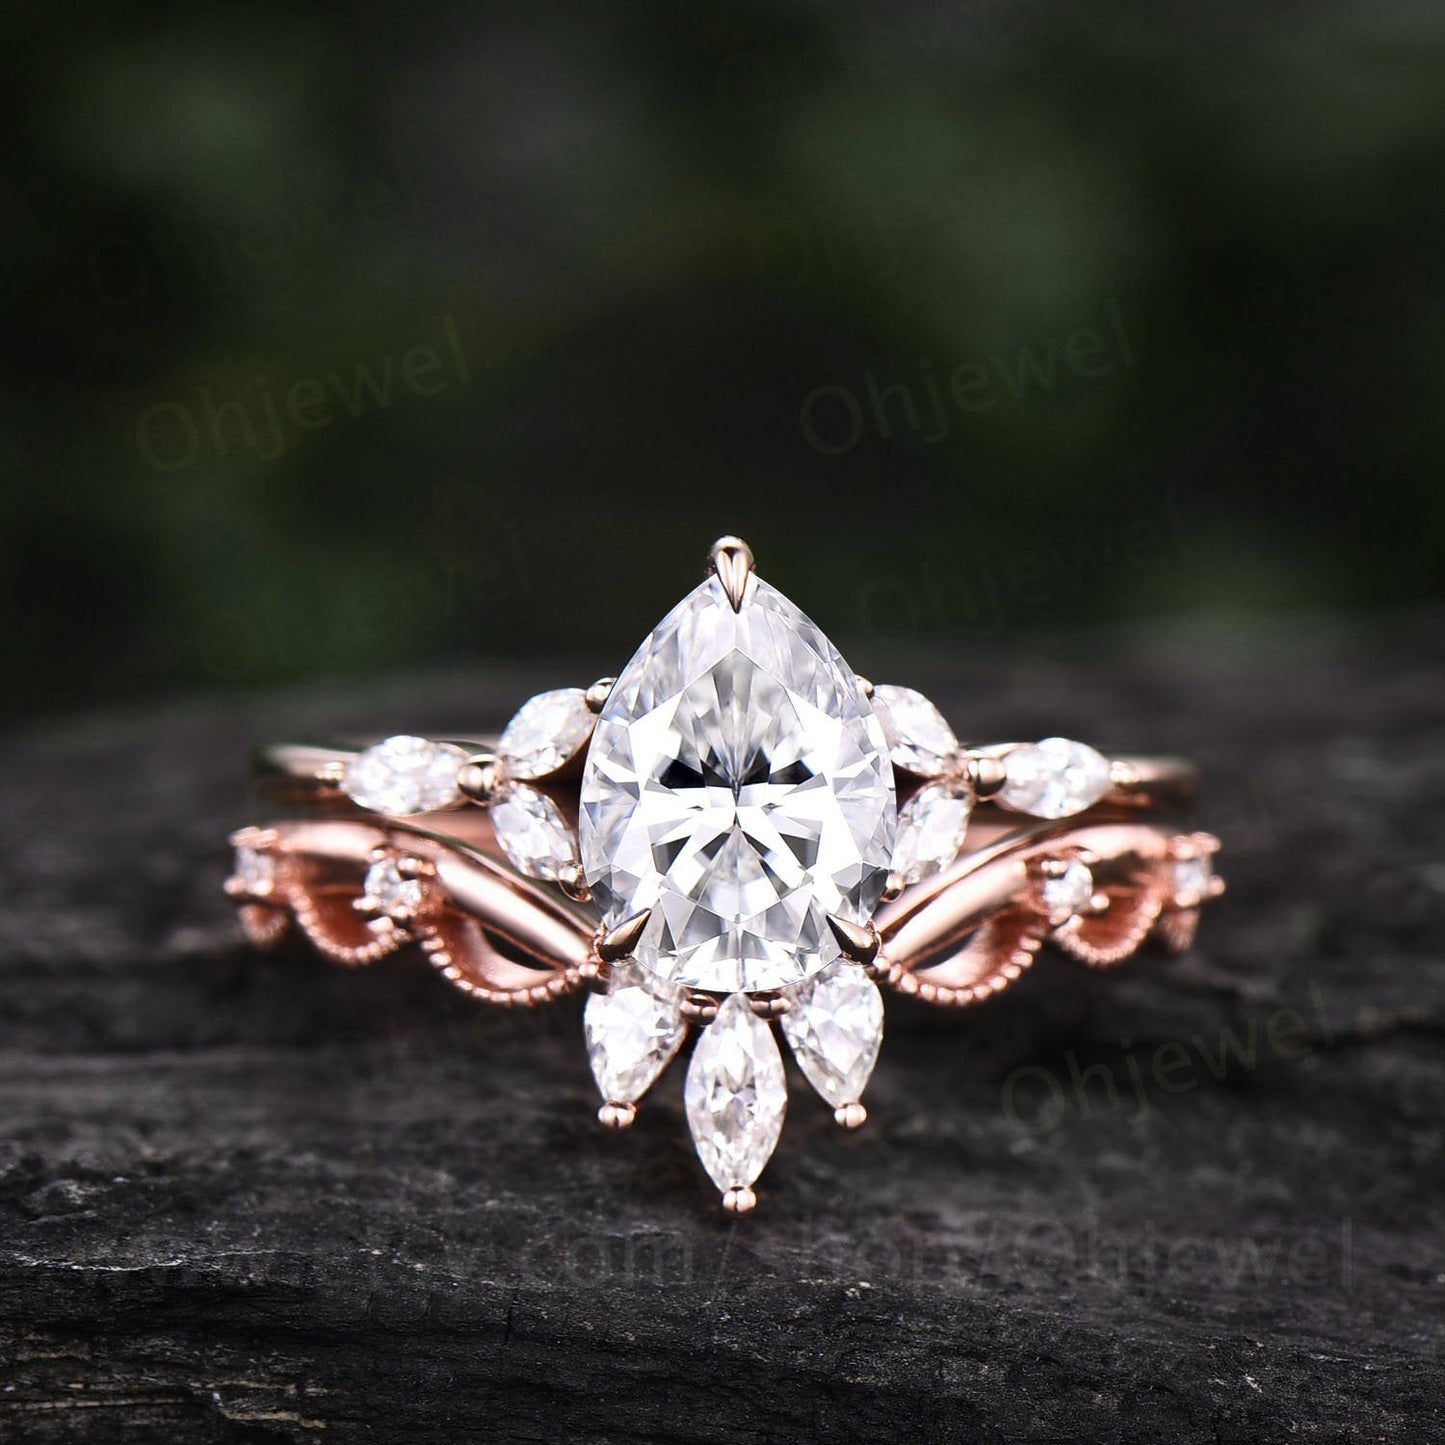 Pear moissanite ring set for women vintage moissanite engagement ring set art deco crown Milgrain ring marquise ring set rose gold silver